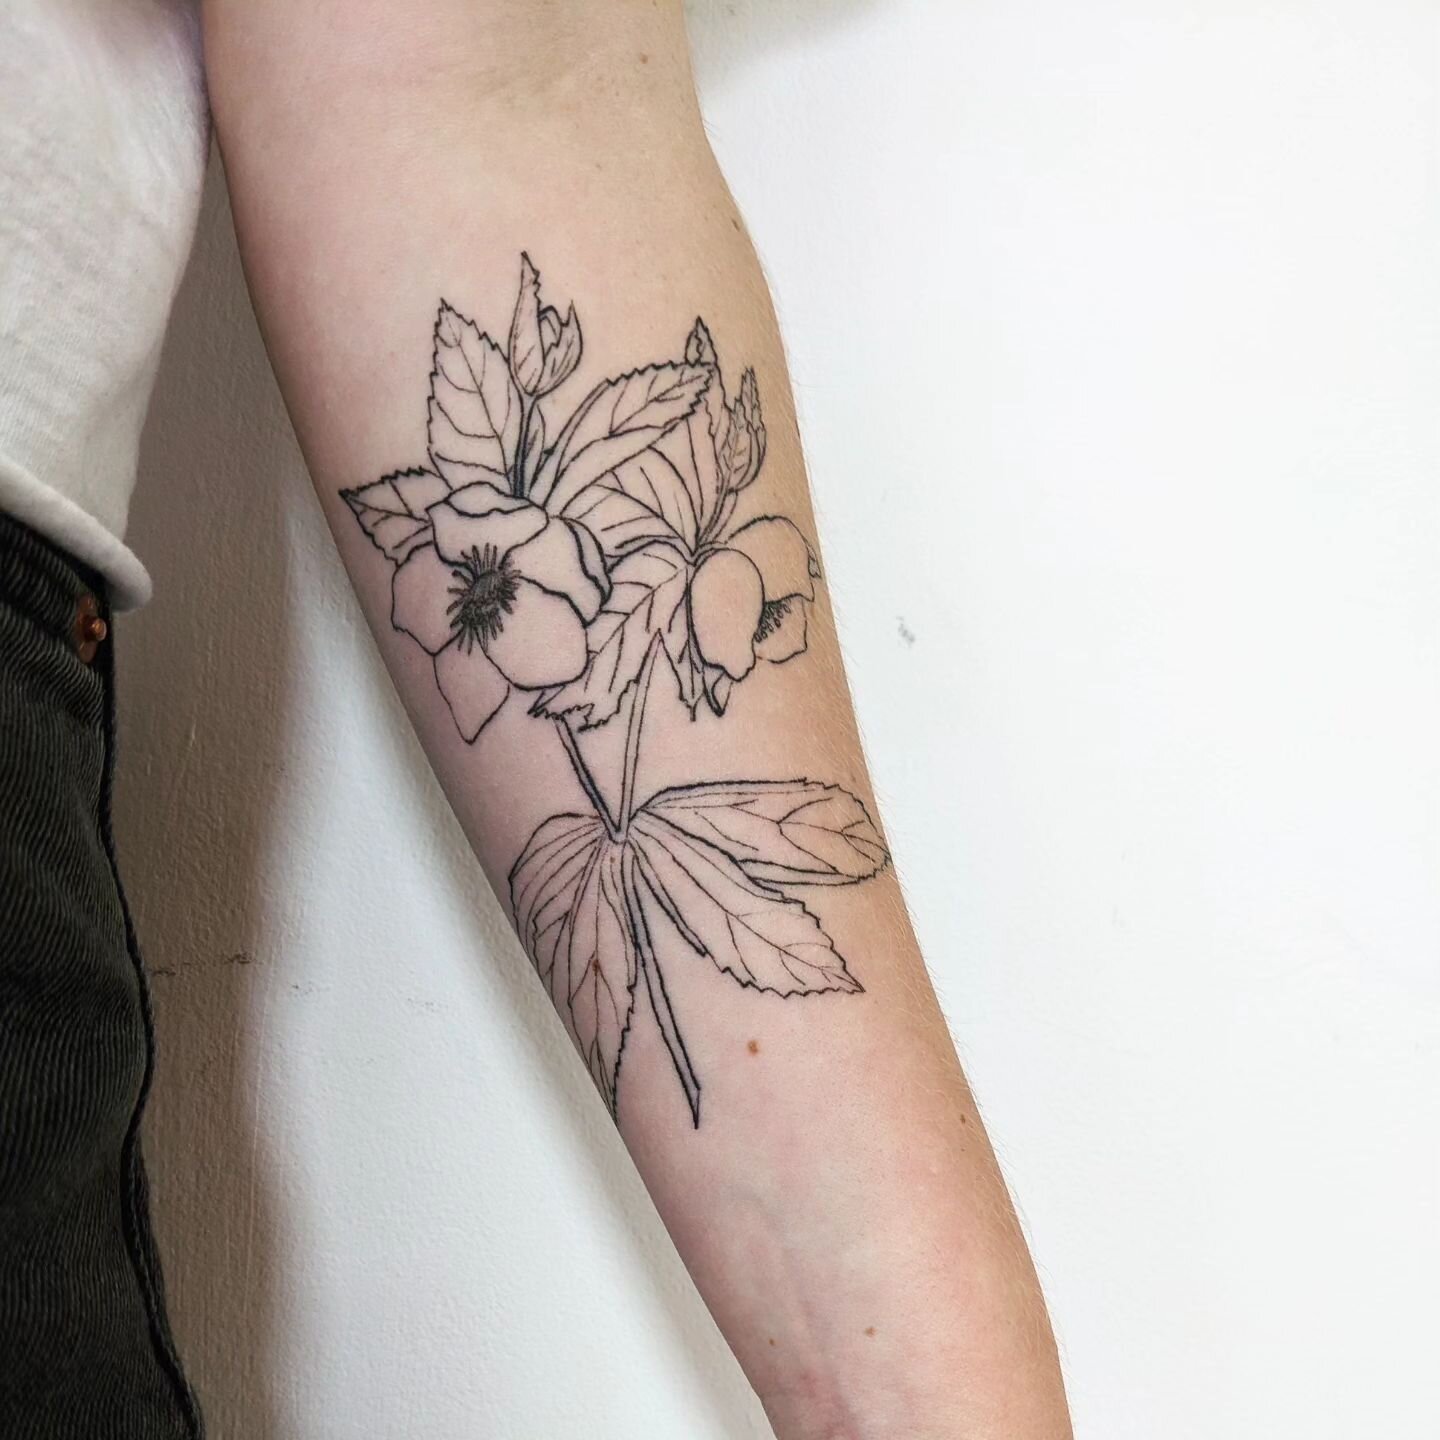 Healed Hellebore I tattooed on myself about a month ago.
#bristoltattoo #bristoltattooartist #botanicaltattoo #planttattoo #flowertattoo